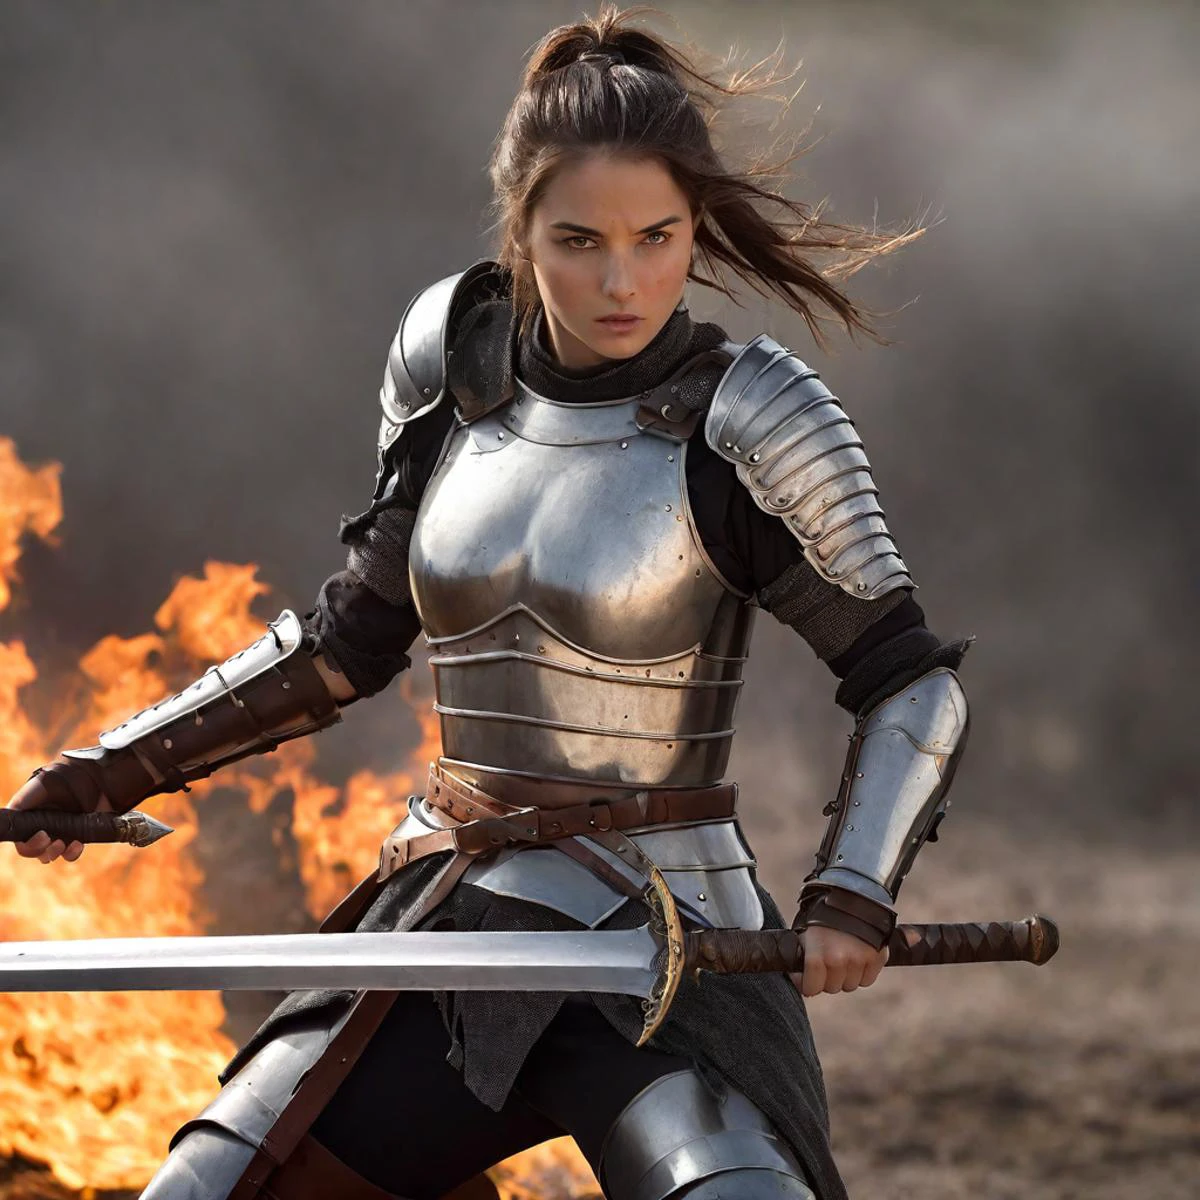 Fotografía de increíble calidad de una guerrera completamente armada en un campo de batalla marcado por las llamas empuñando una espada